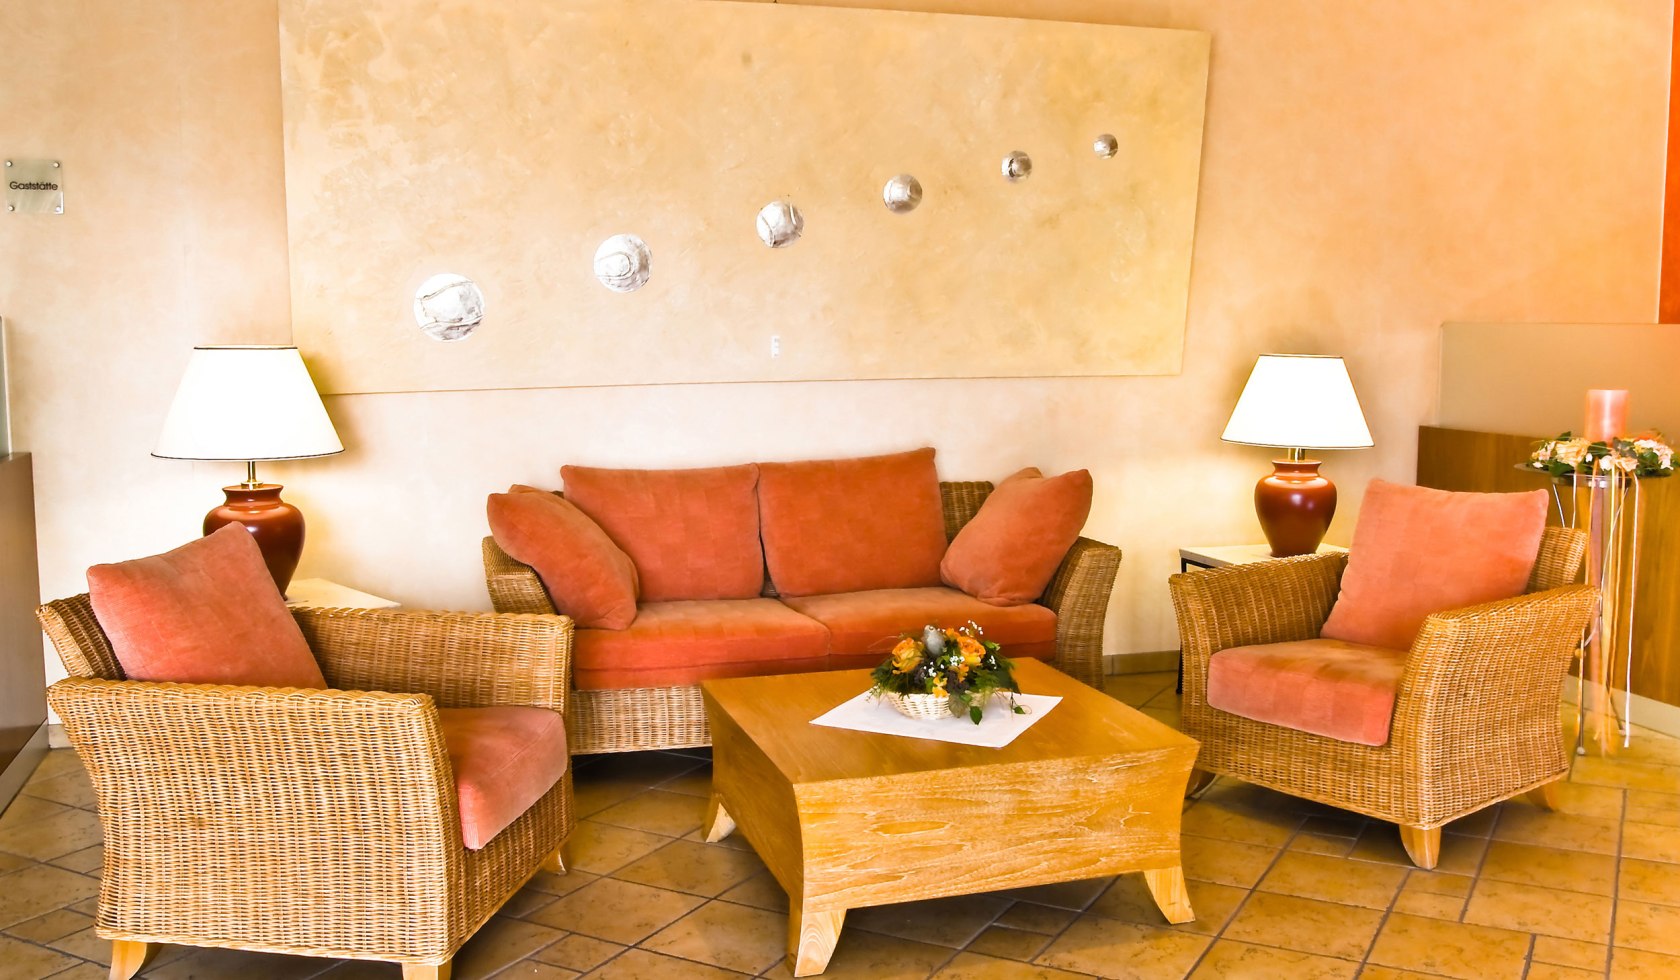 Hotellobby mit Sitzmöglichkeiten in Orangetönen, © laVital Sport- & Wellnesshotel